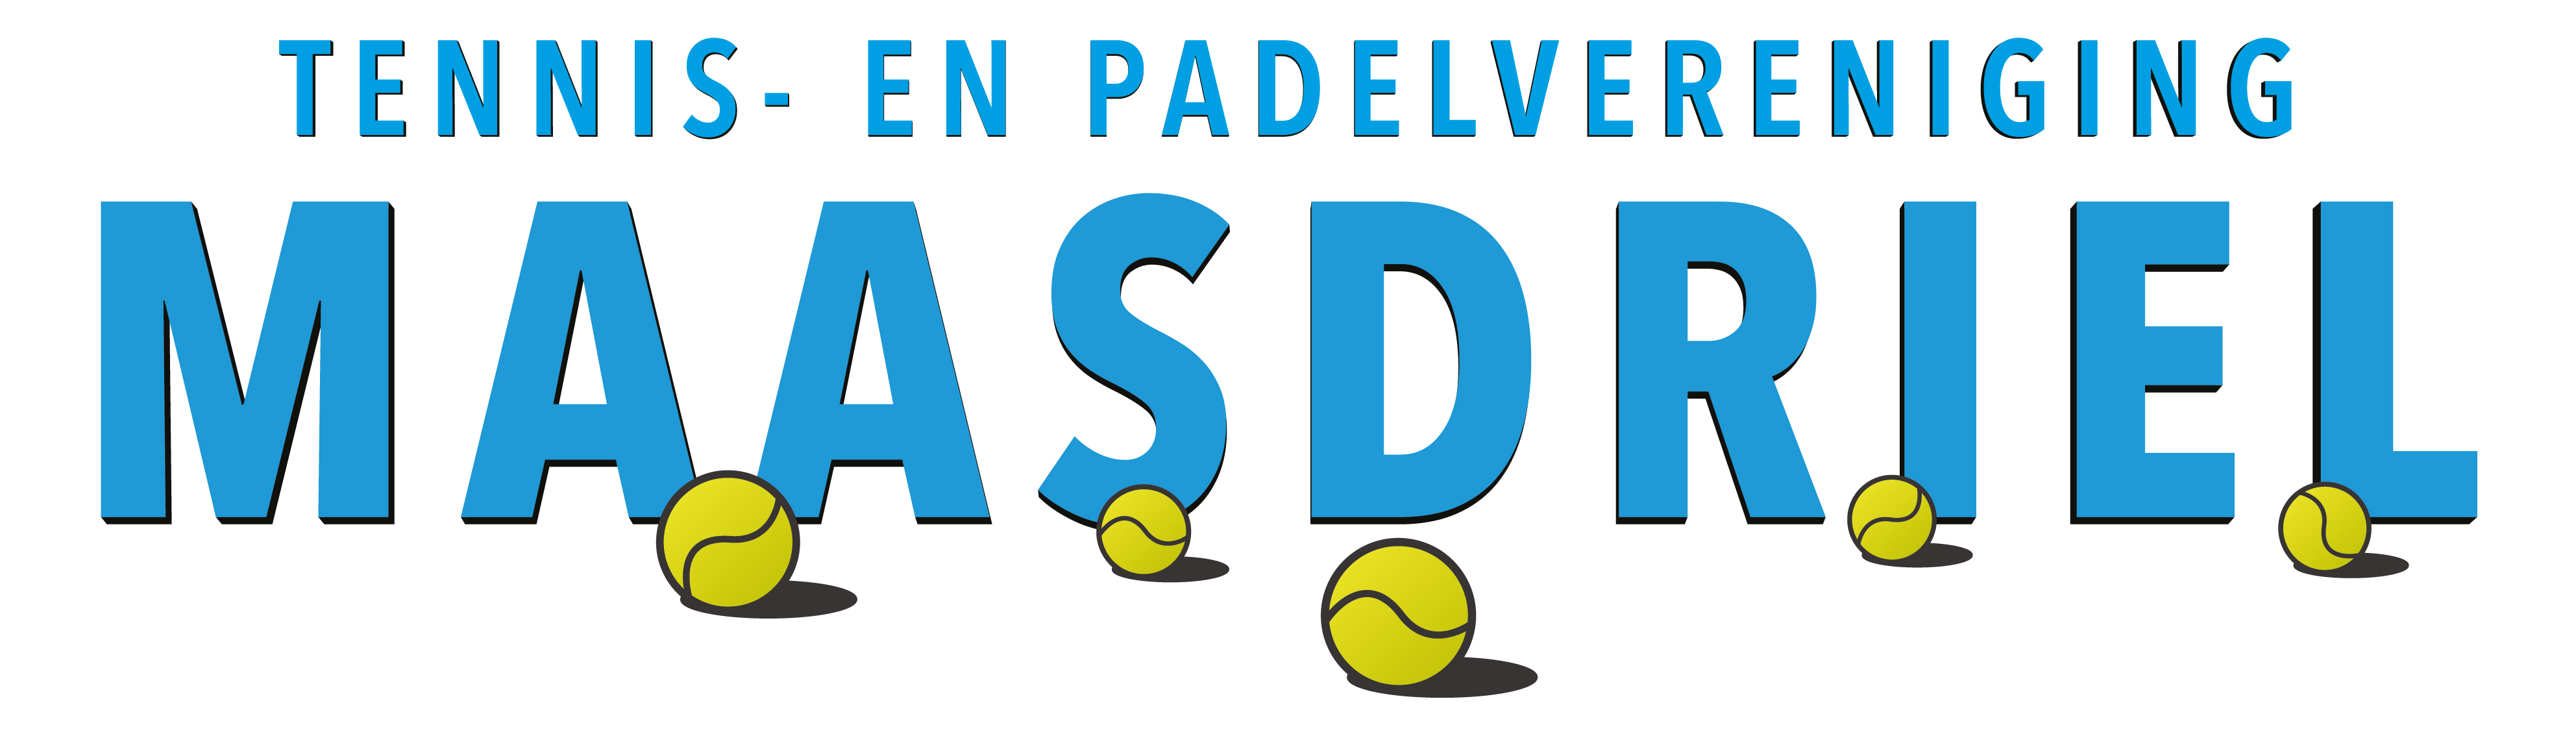 Profile image of venue Tennis- en Padelvereniging Maasdriel